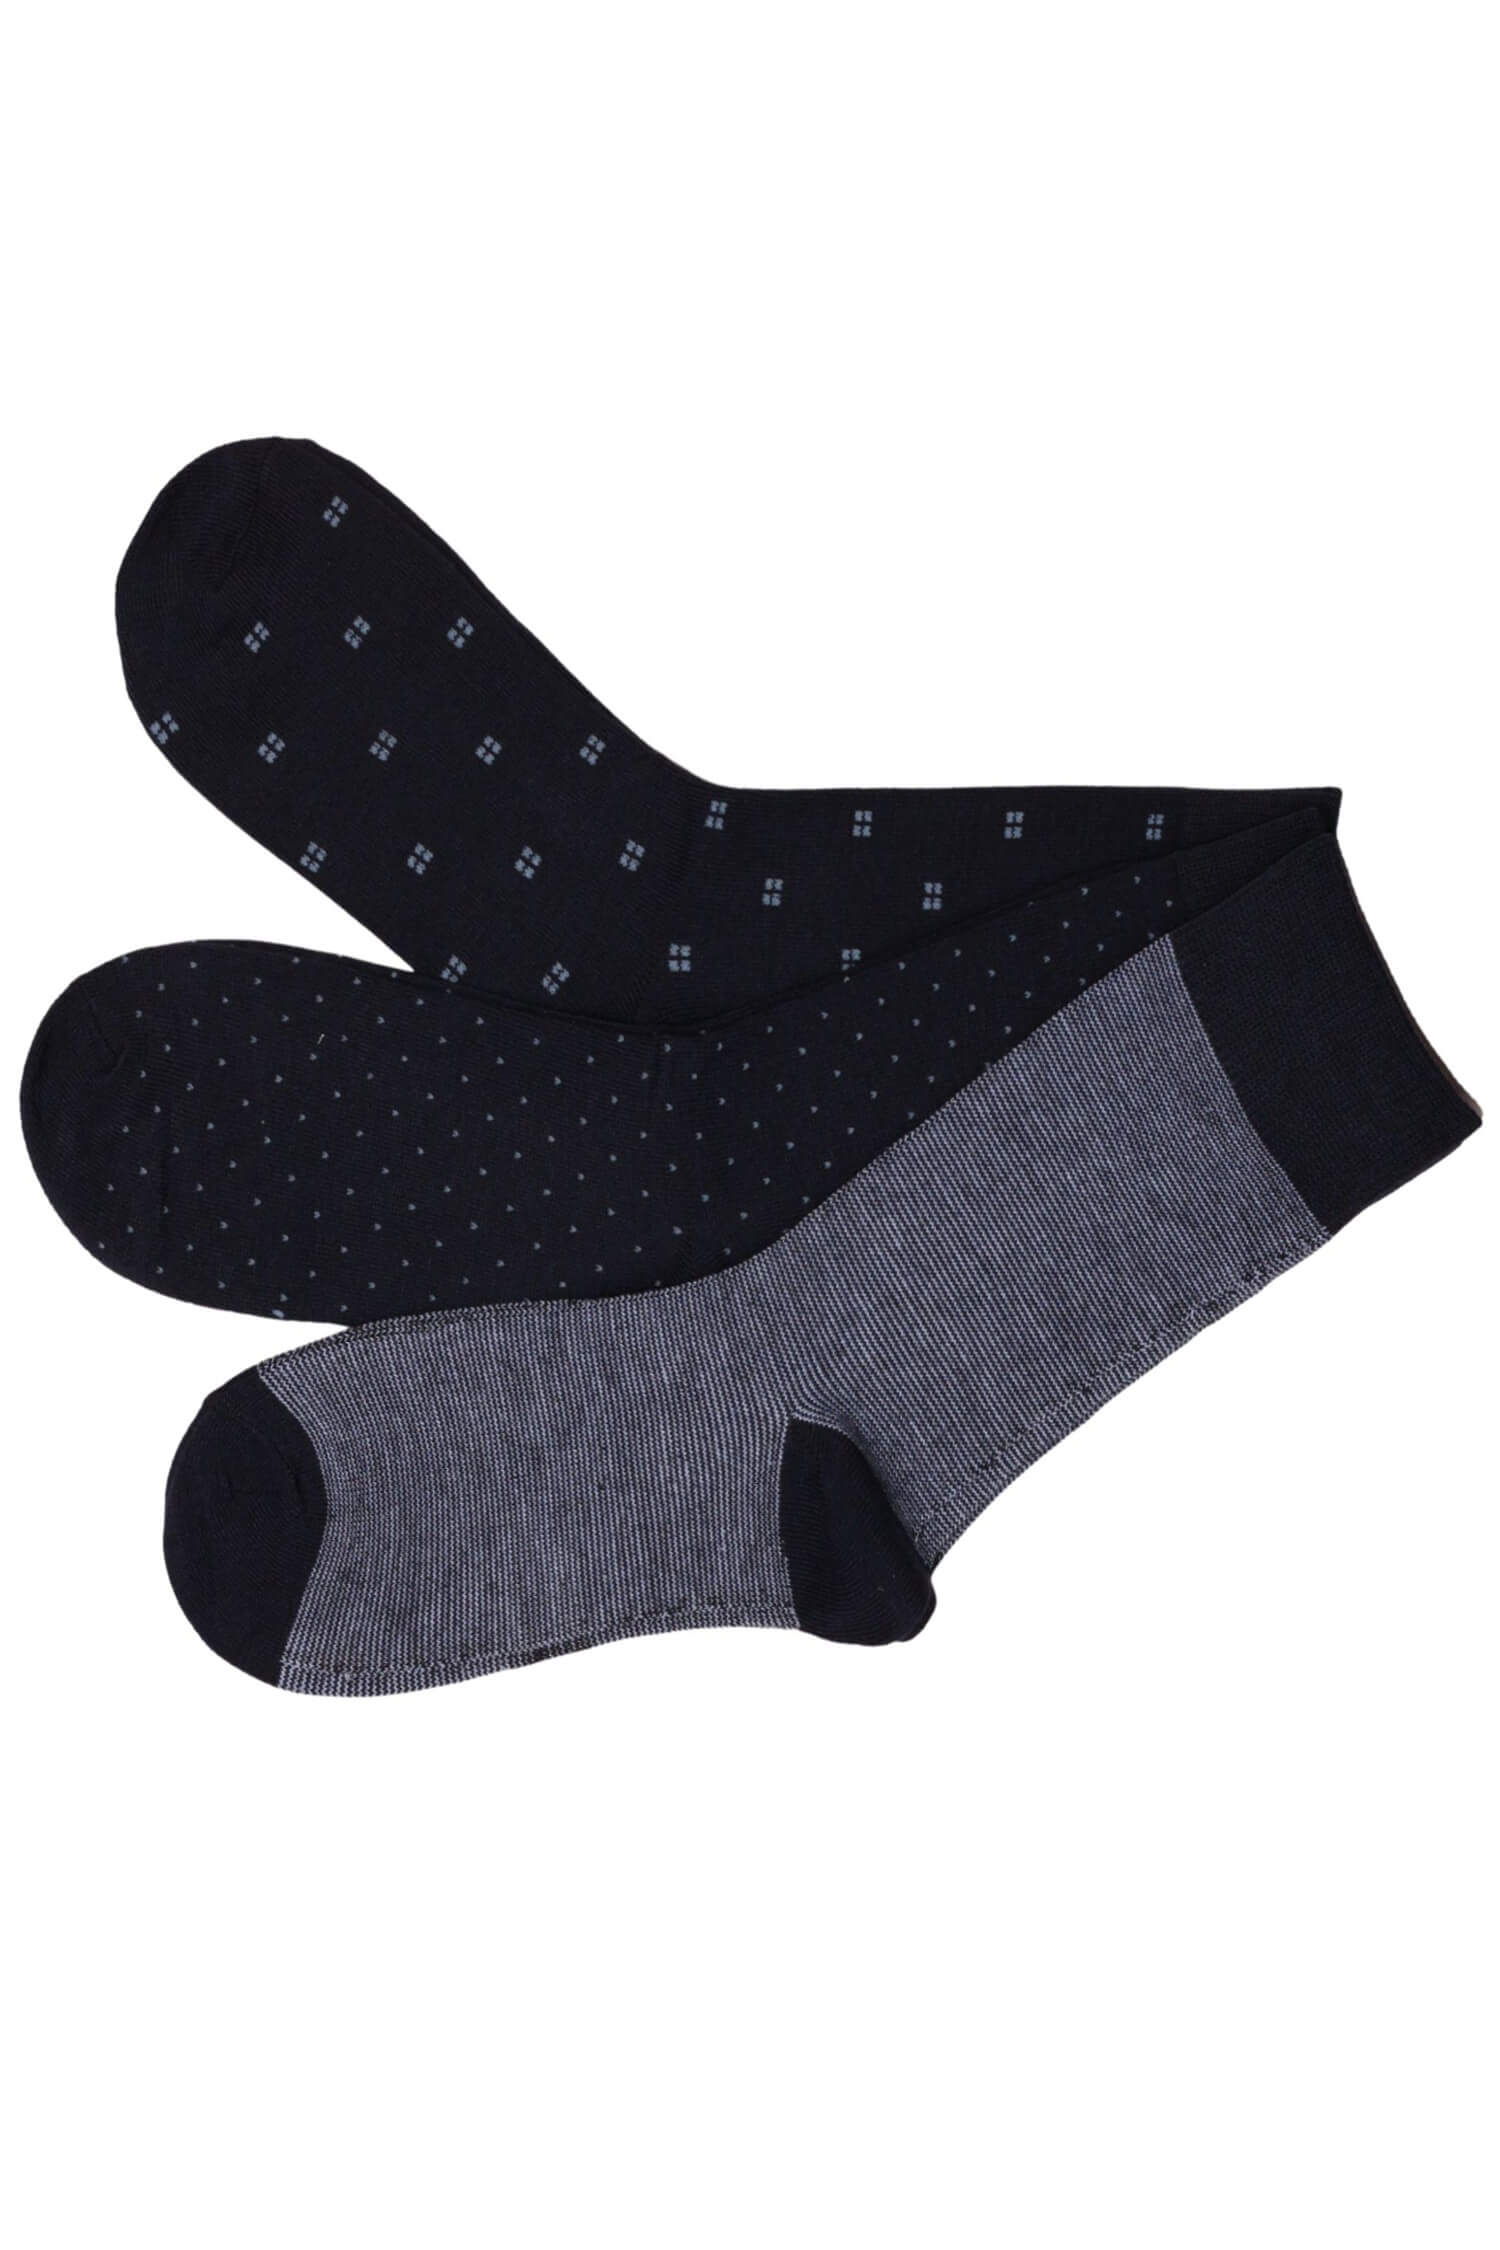 Pánské vysoké ponožky bavlna - 3 páry vícebarevná 39-42